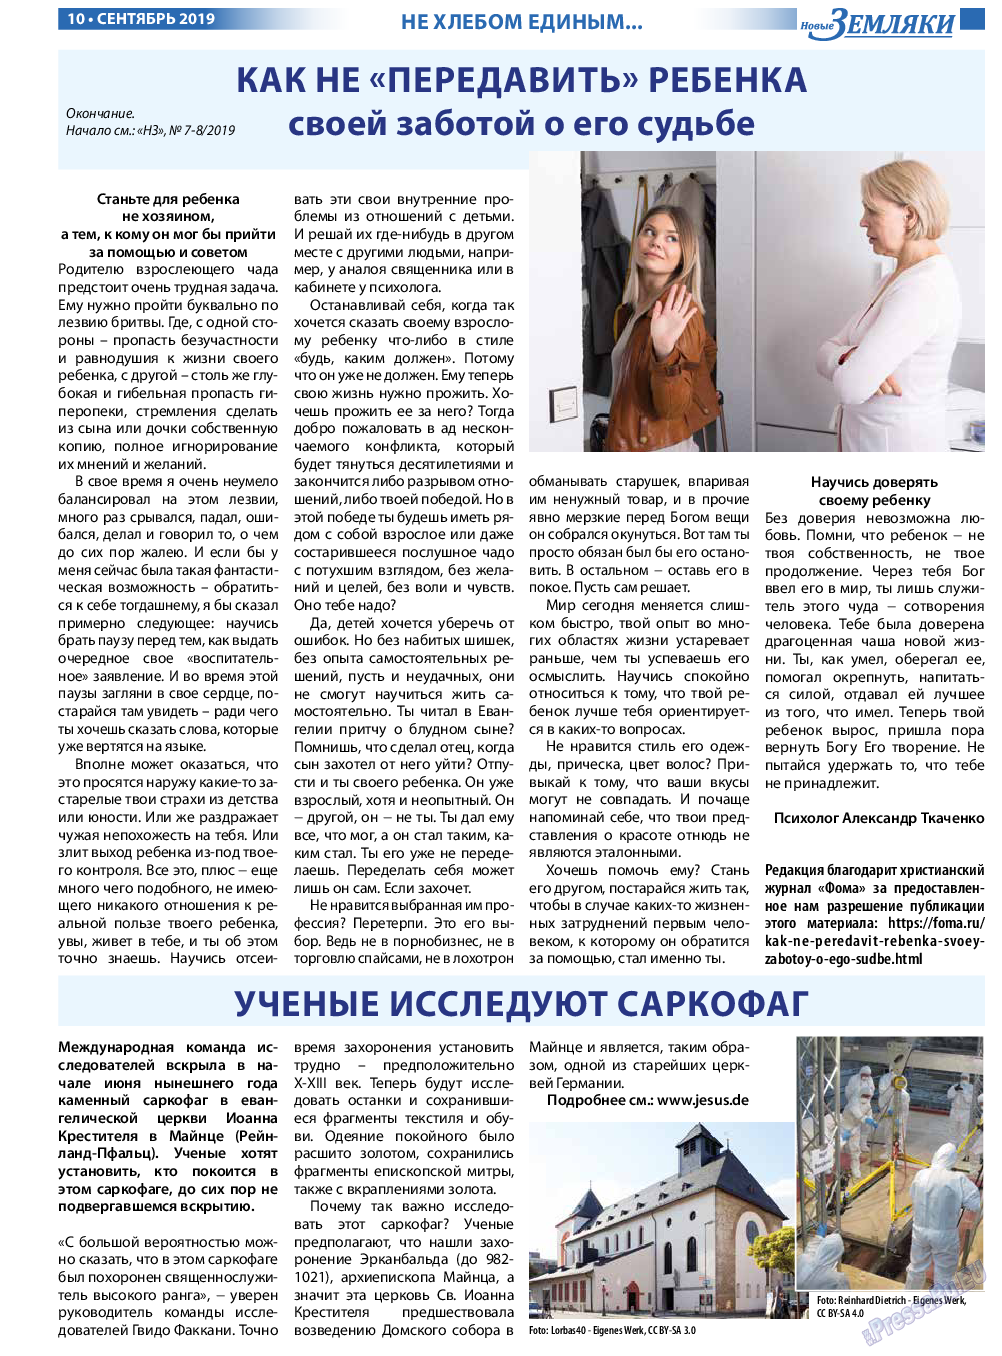 Новые Земляки (газета). 2019 год, номер 9, стр. 10